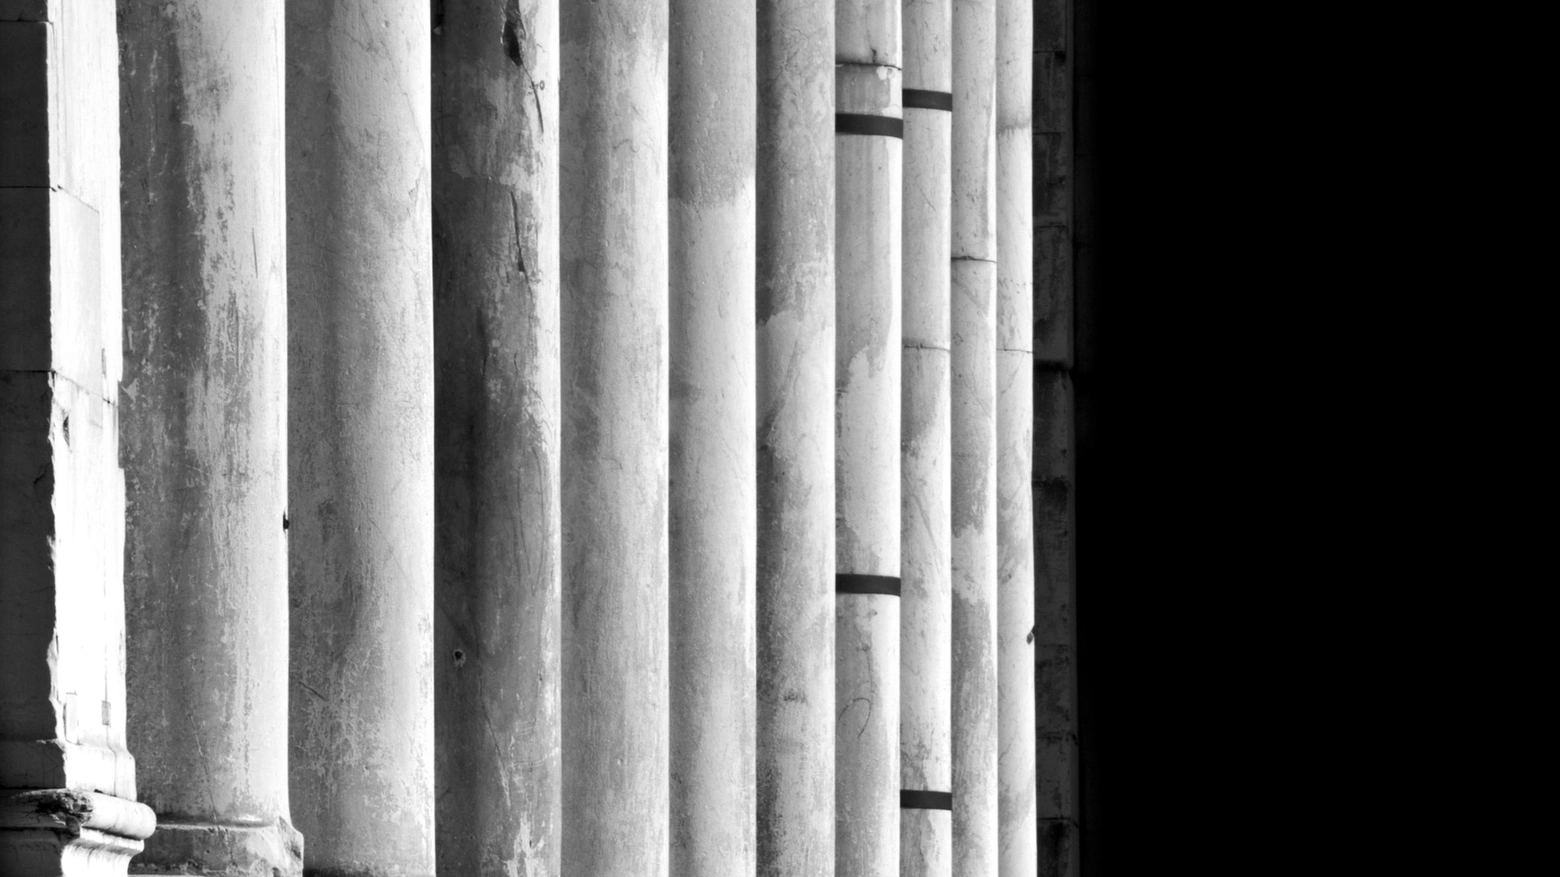 “Brevi di-stanze“: in mostra da domani al Palazzo delle Esposizioni le foto di Paolo Pacini. Che svelano la poesia nascosta nella quotidianità .